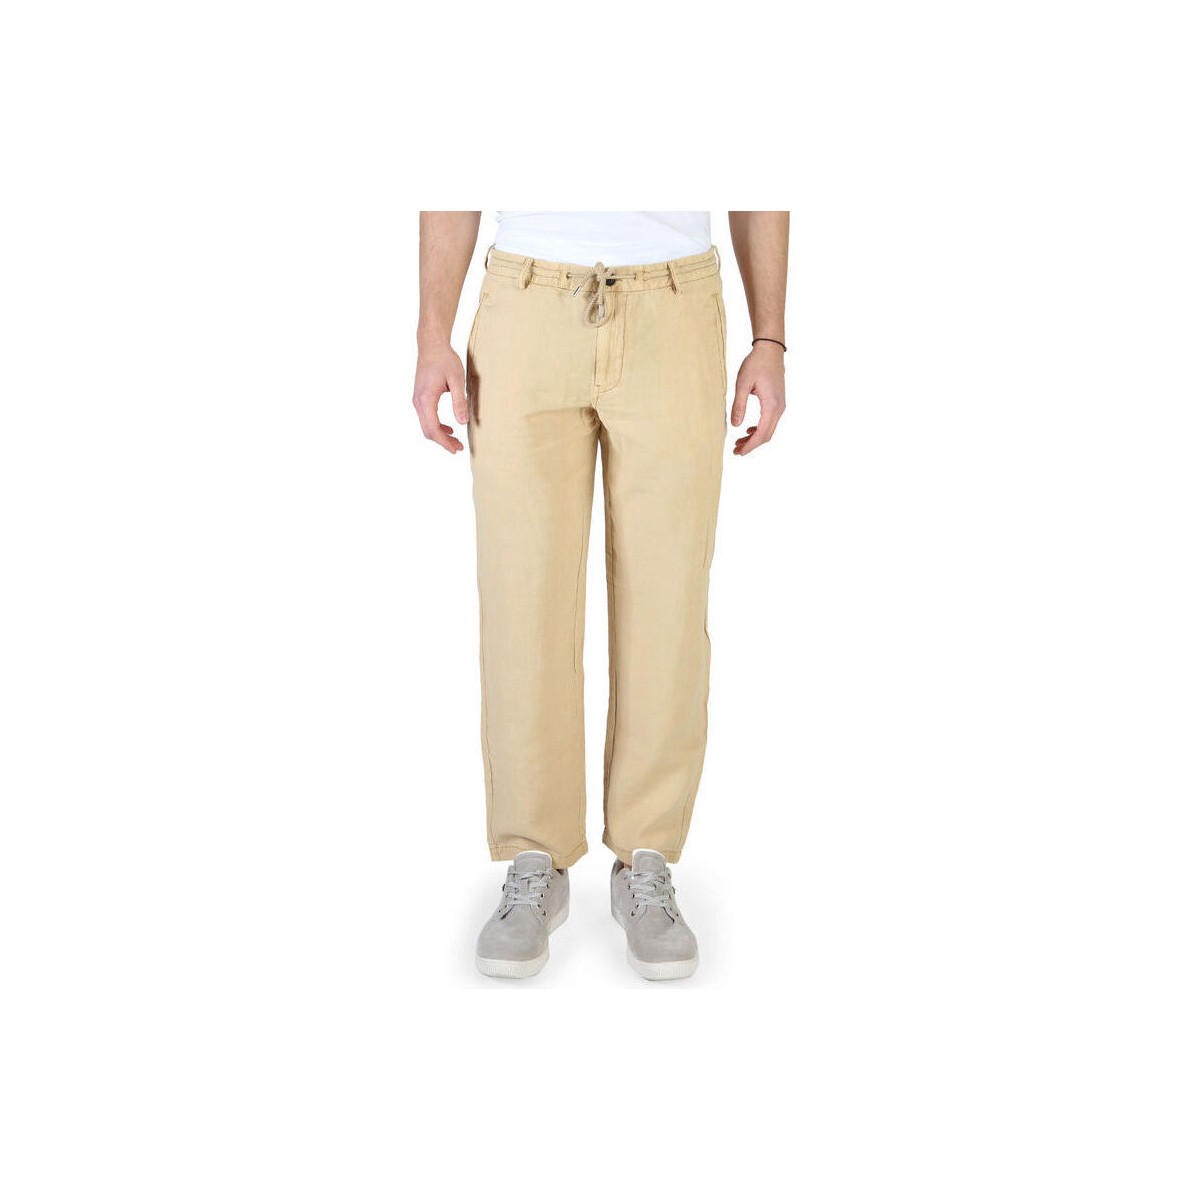 Υφασμάτινα Άνδρας Παντελόνια Armani jeans - 3y6p56_6ndmz Brown